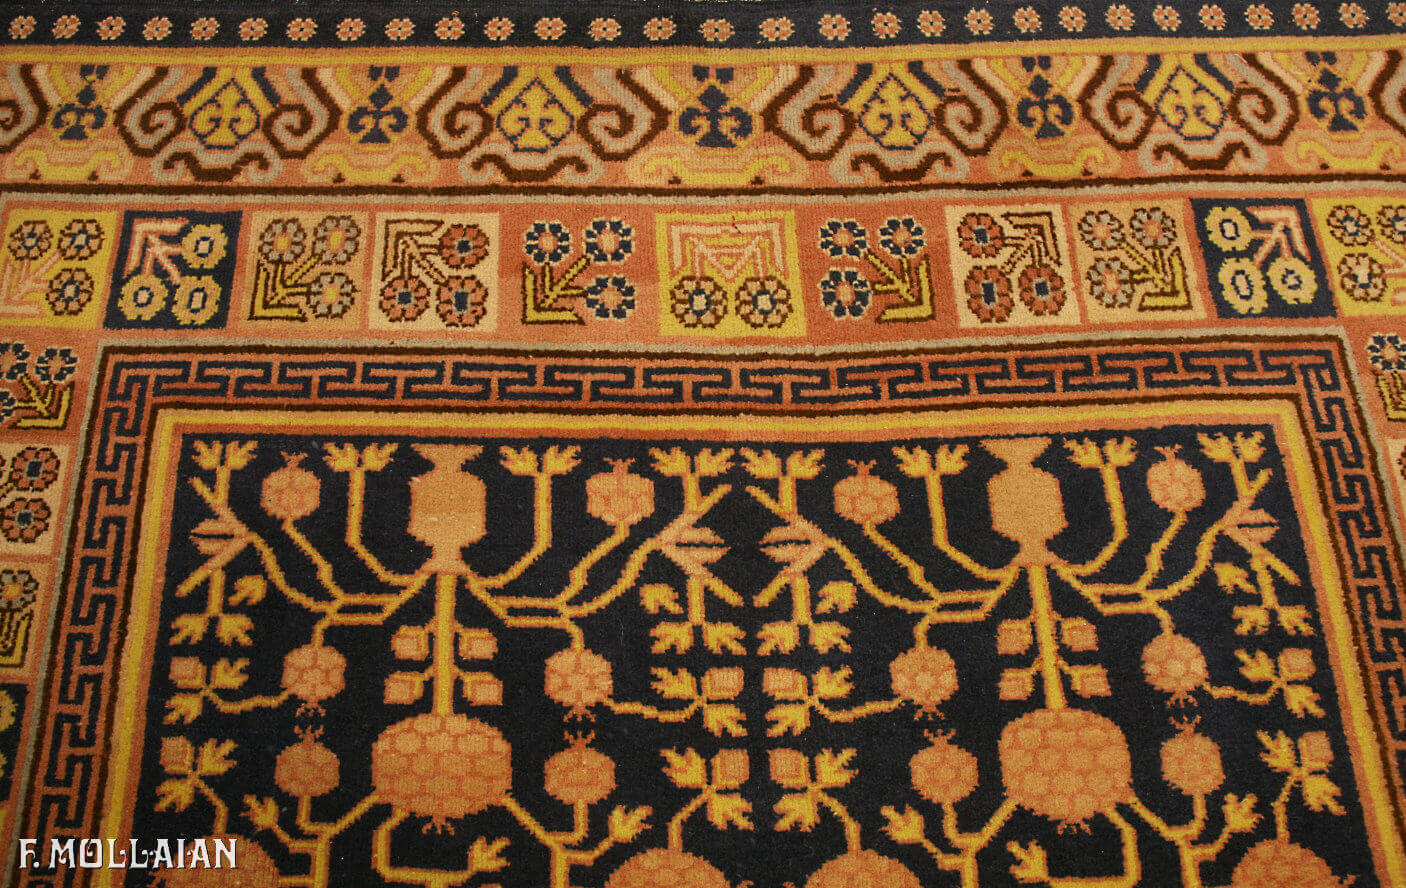 Tapis Antique Khotan n°:15810851